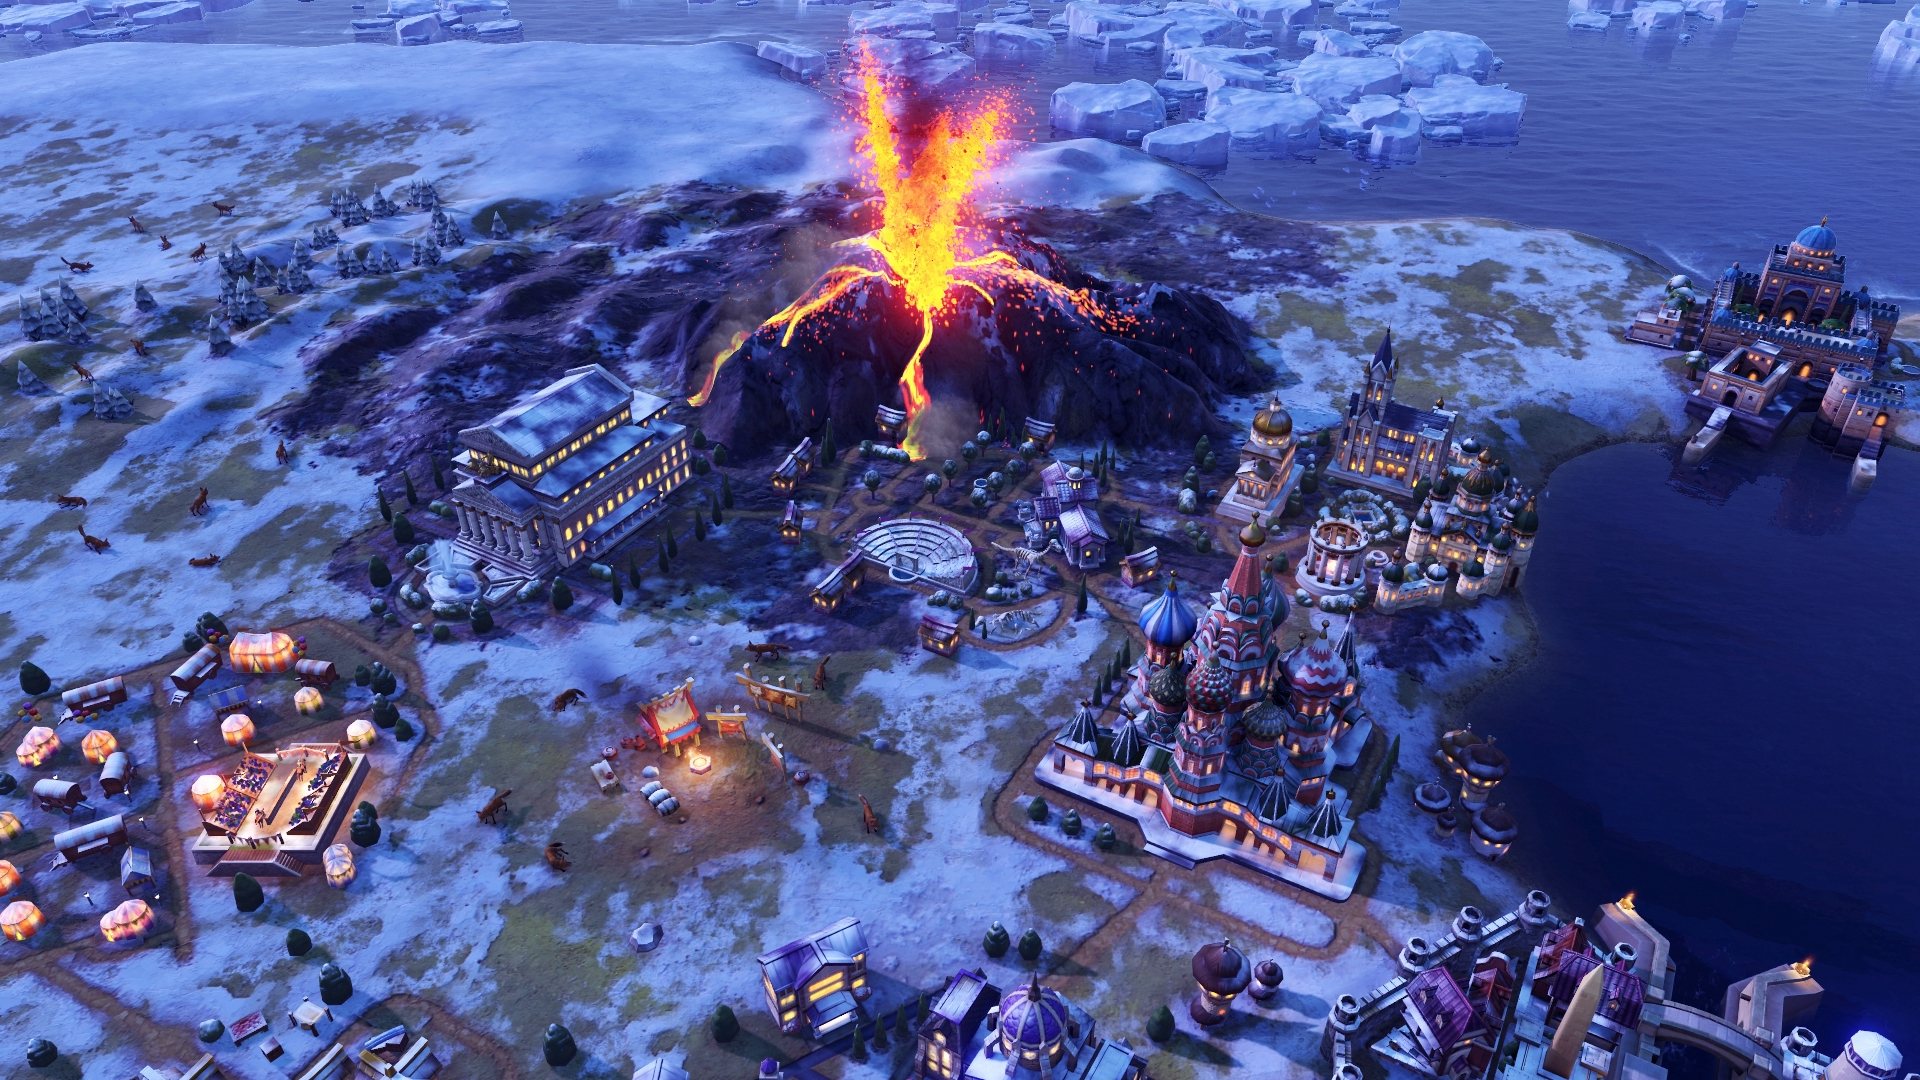 Sid Meier's Civilization VI - Gathering Storm DLC Steam Altergift